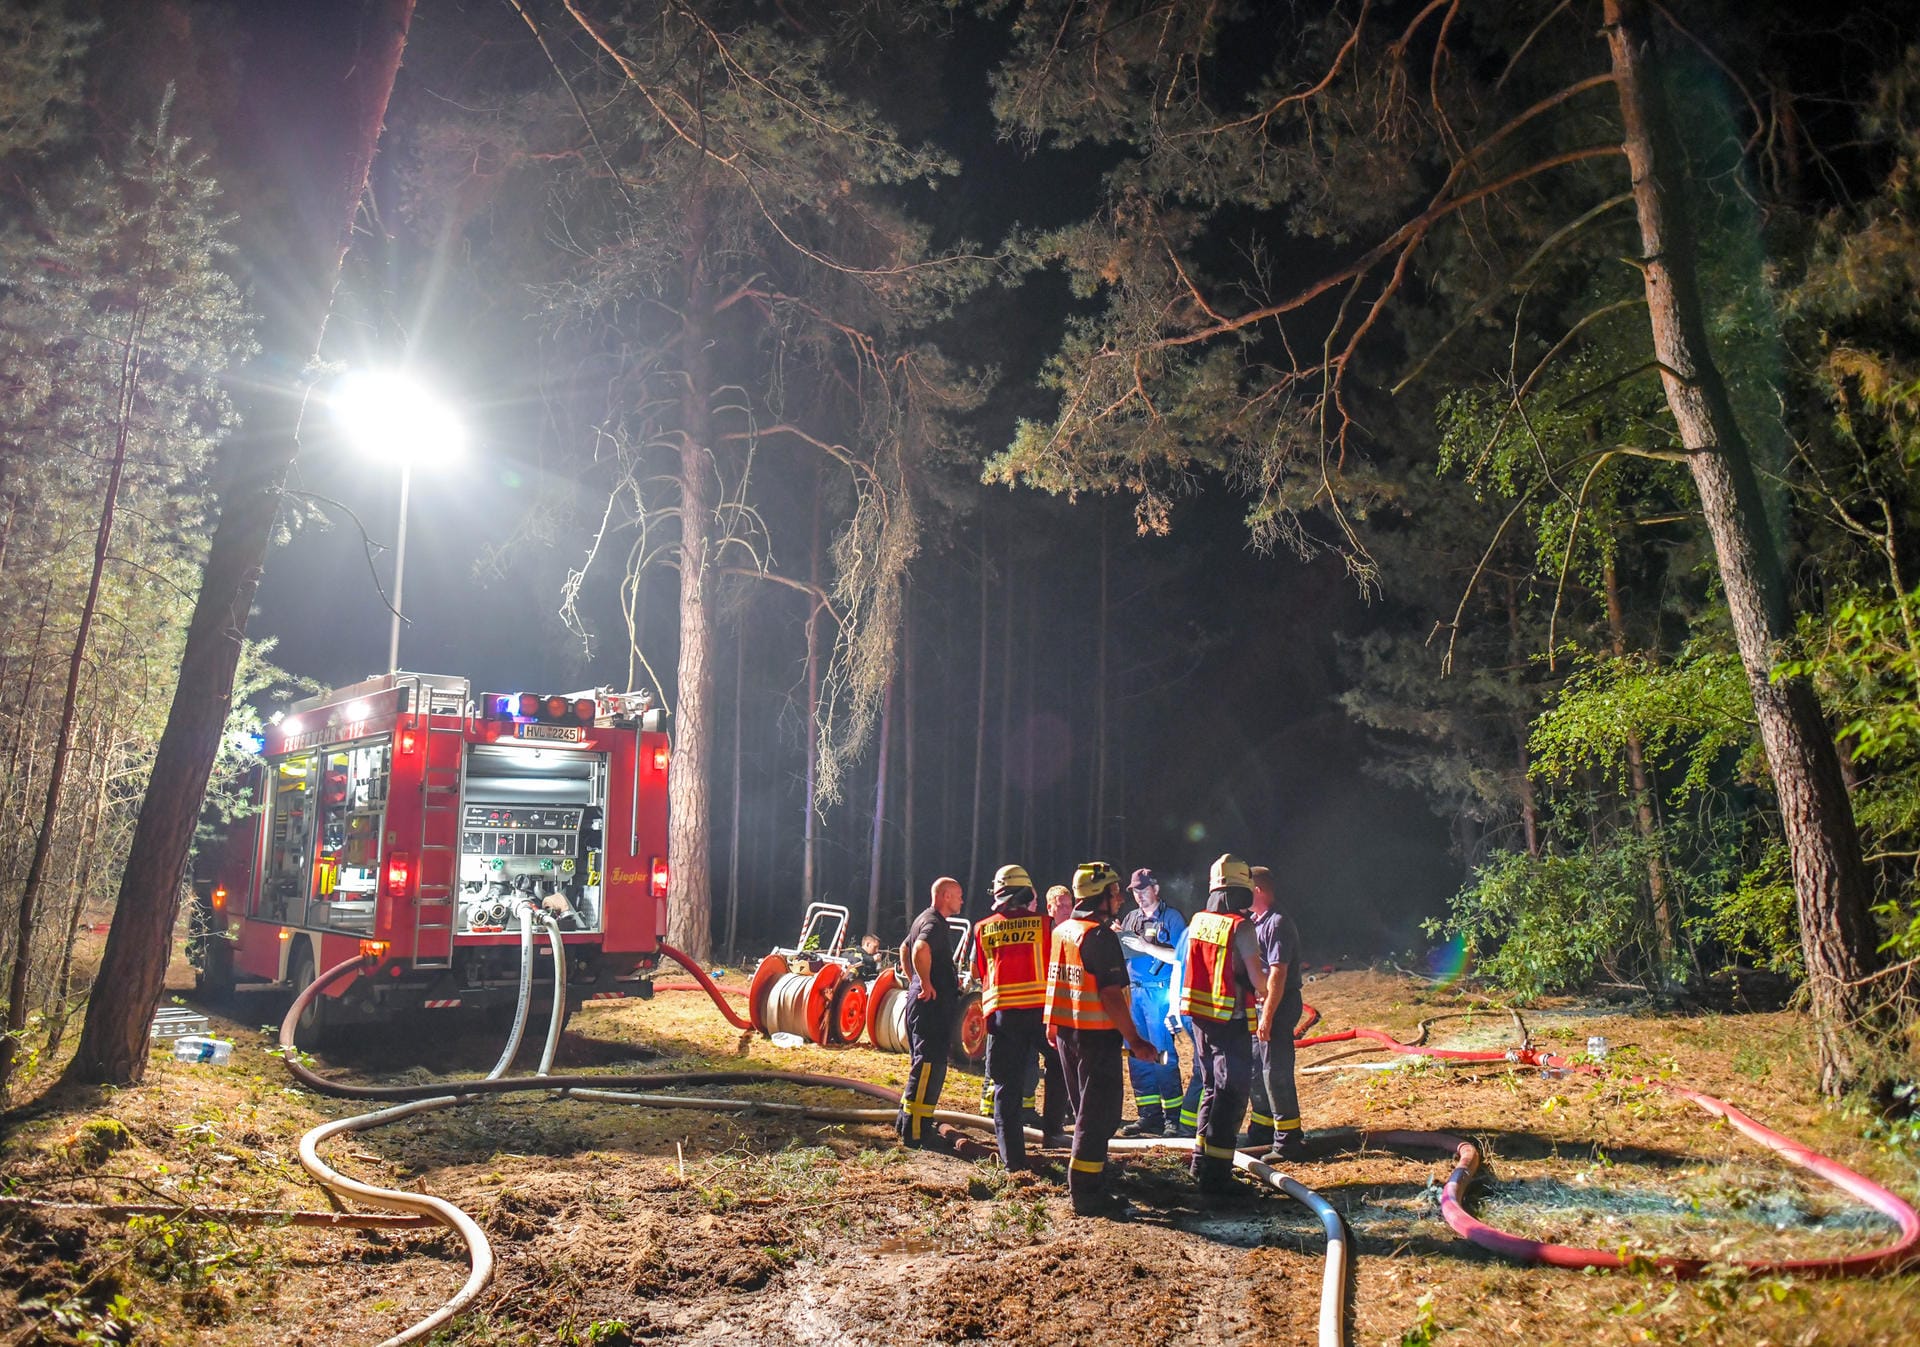 Einsatzkräfte der Feuerwehr stehen an einer Pumpstation für den Wassertransport. Das Feuer hat sich auf einer großen Waldfläche ausgebreitet.